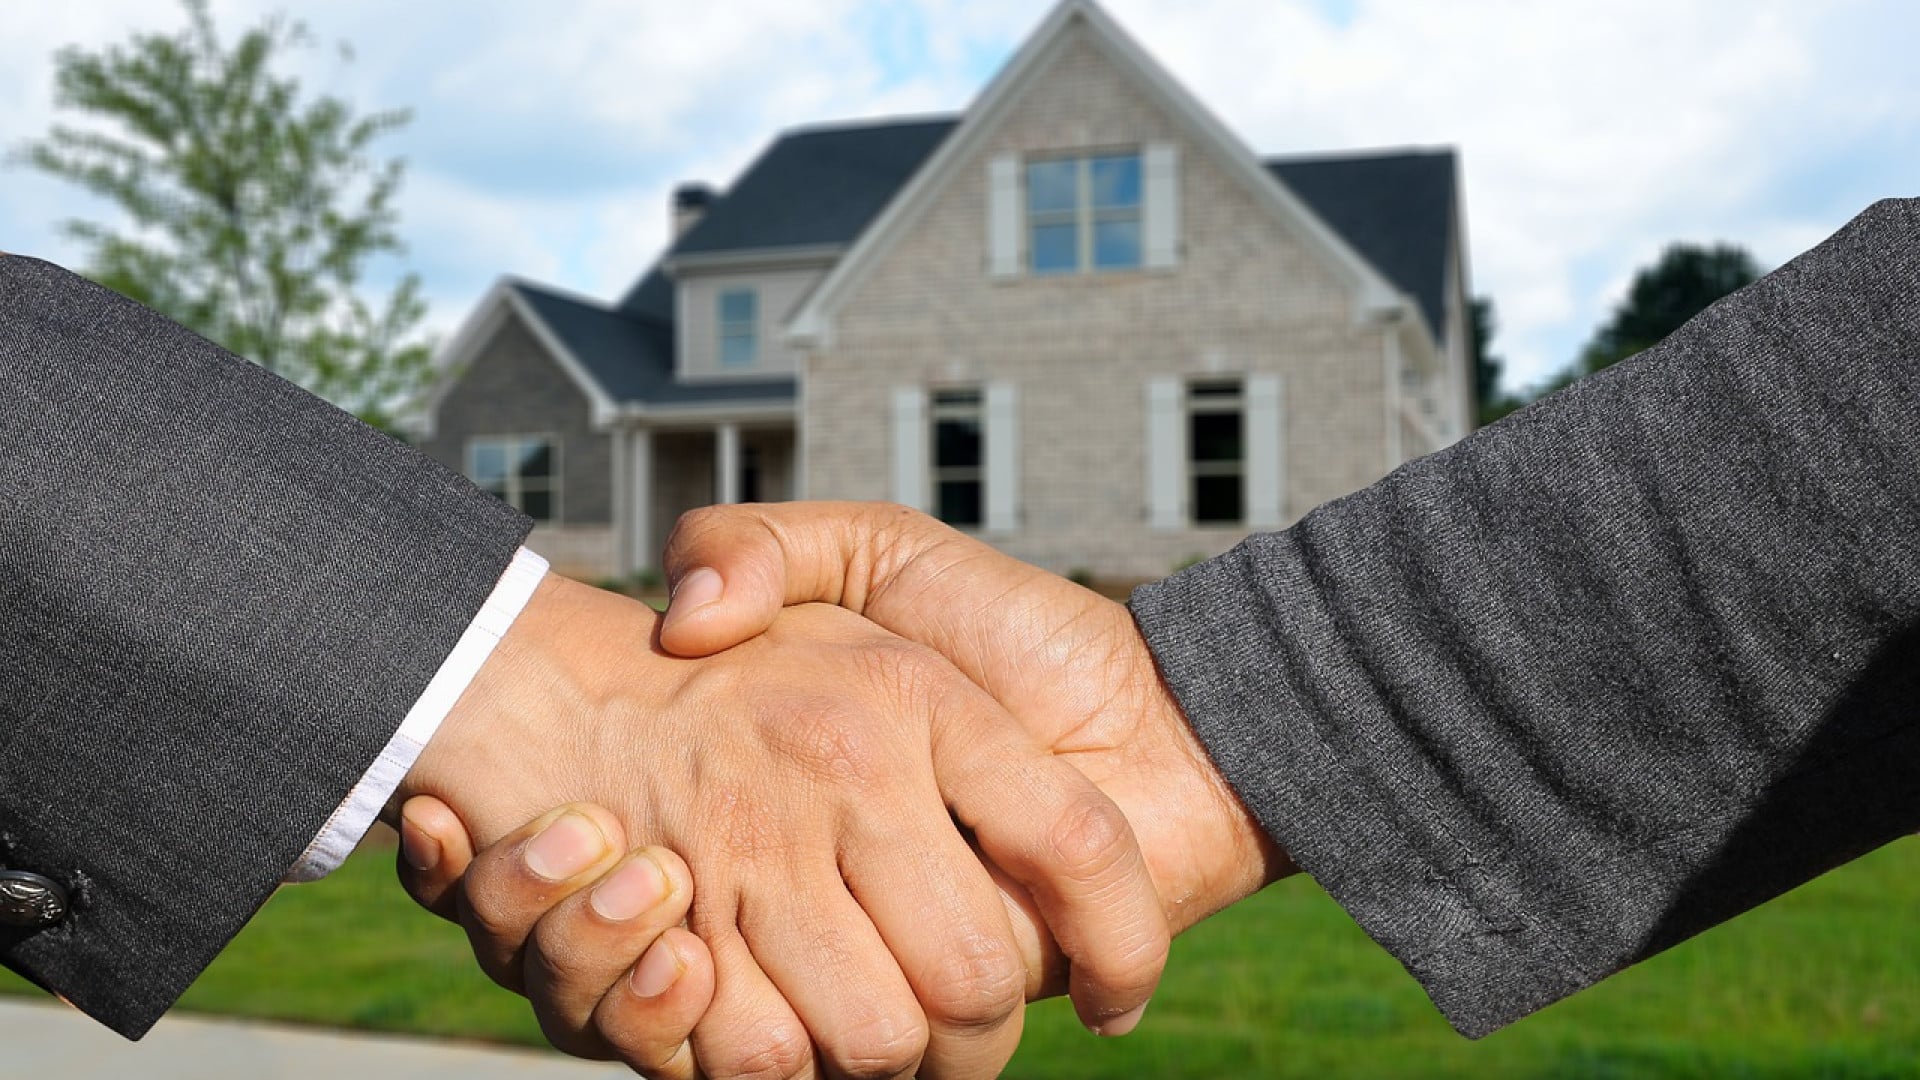 Entreprise spécialiste de l’immobilier : quels sont les atouts en matière d’expertise immobilière ?